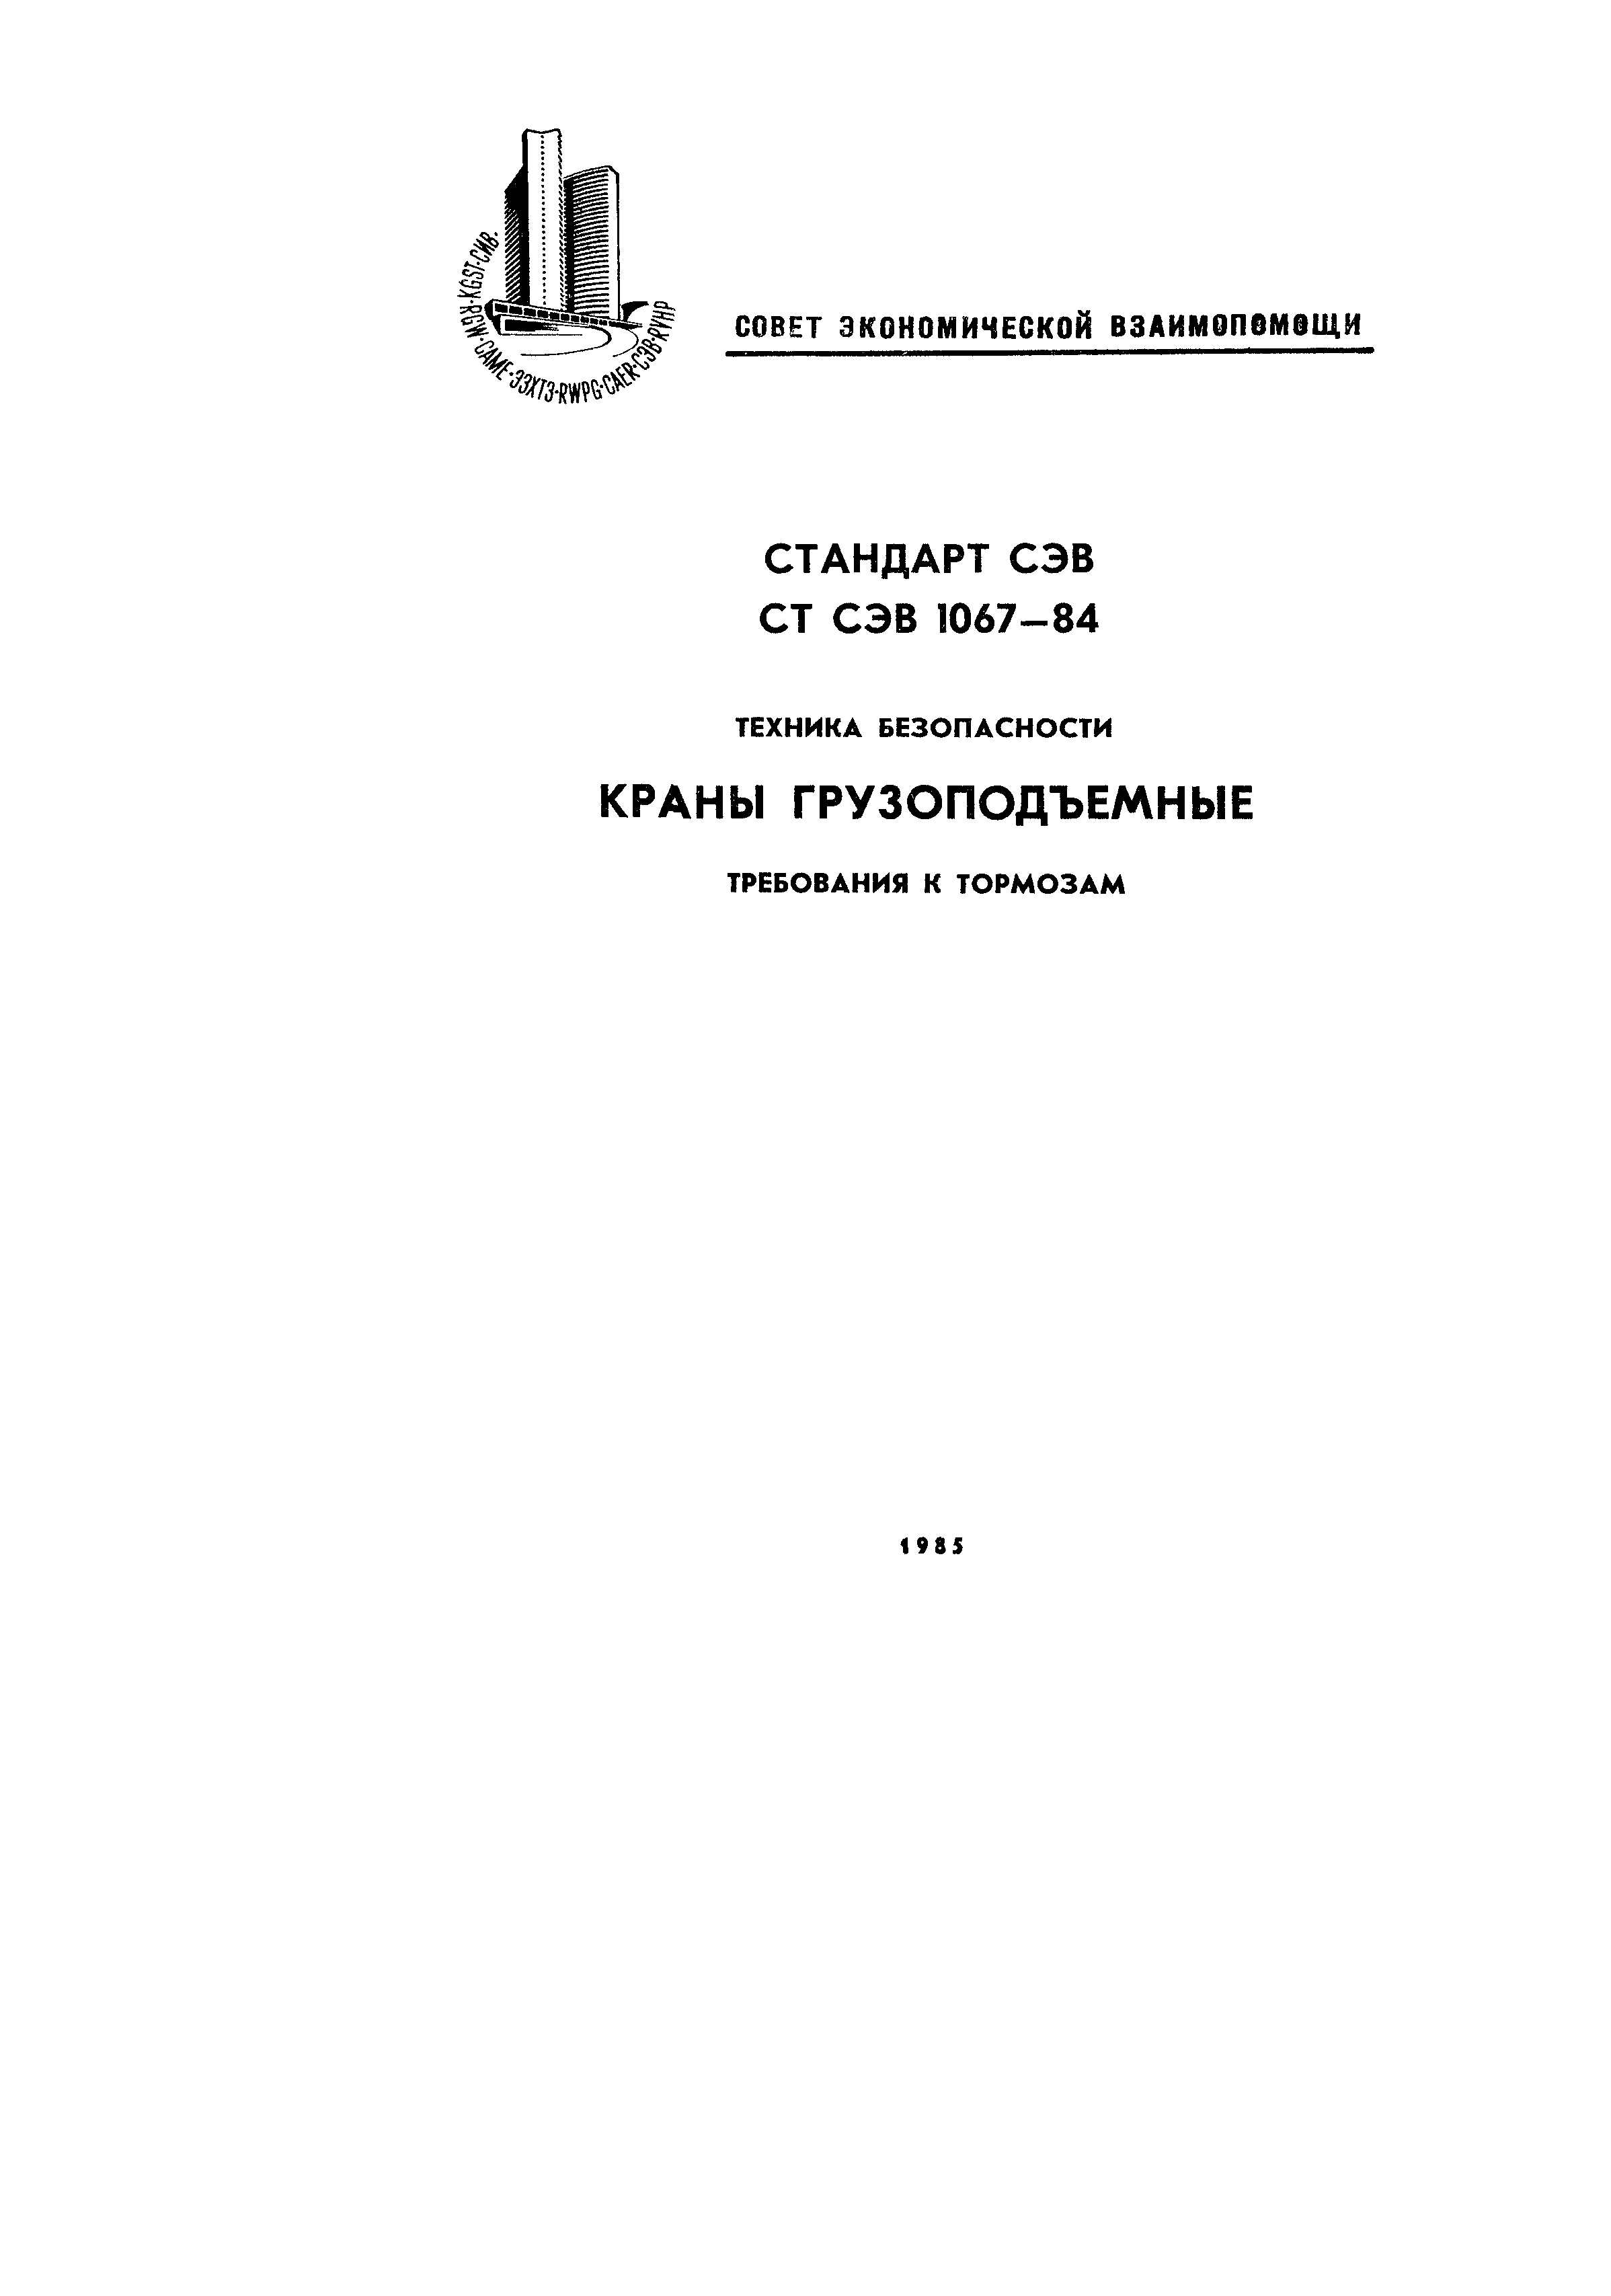 СТ СЭВ 1067-84